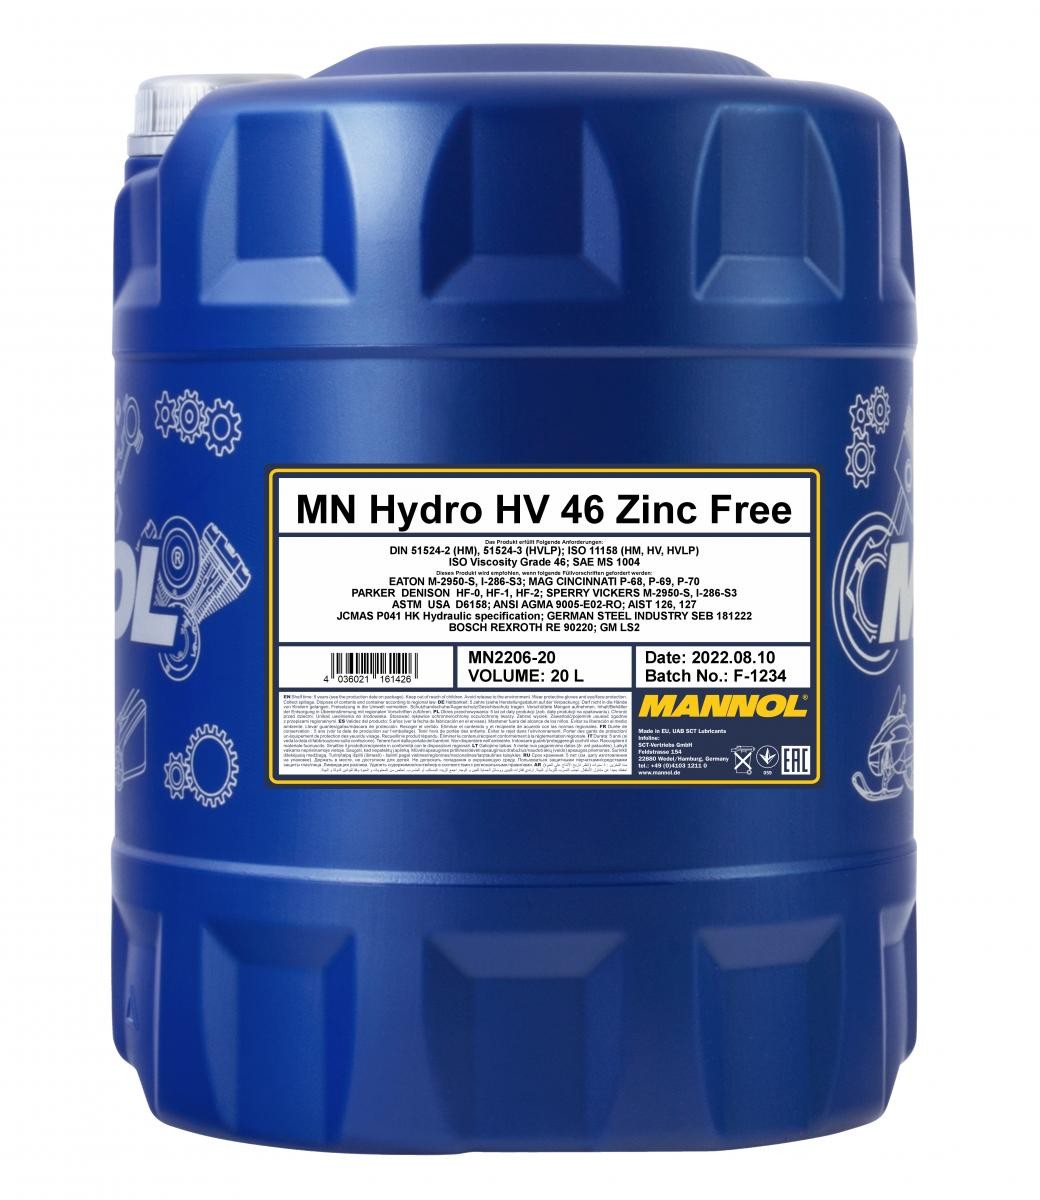 MANNOL Hydro HV ISO 46, Zinc Free MN2206-20 Central Hydraulic Oil